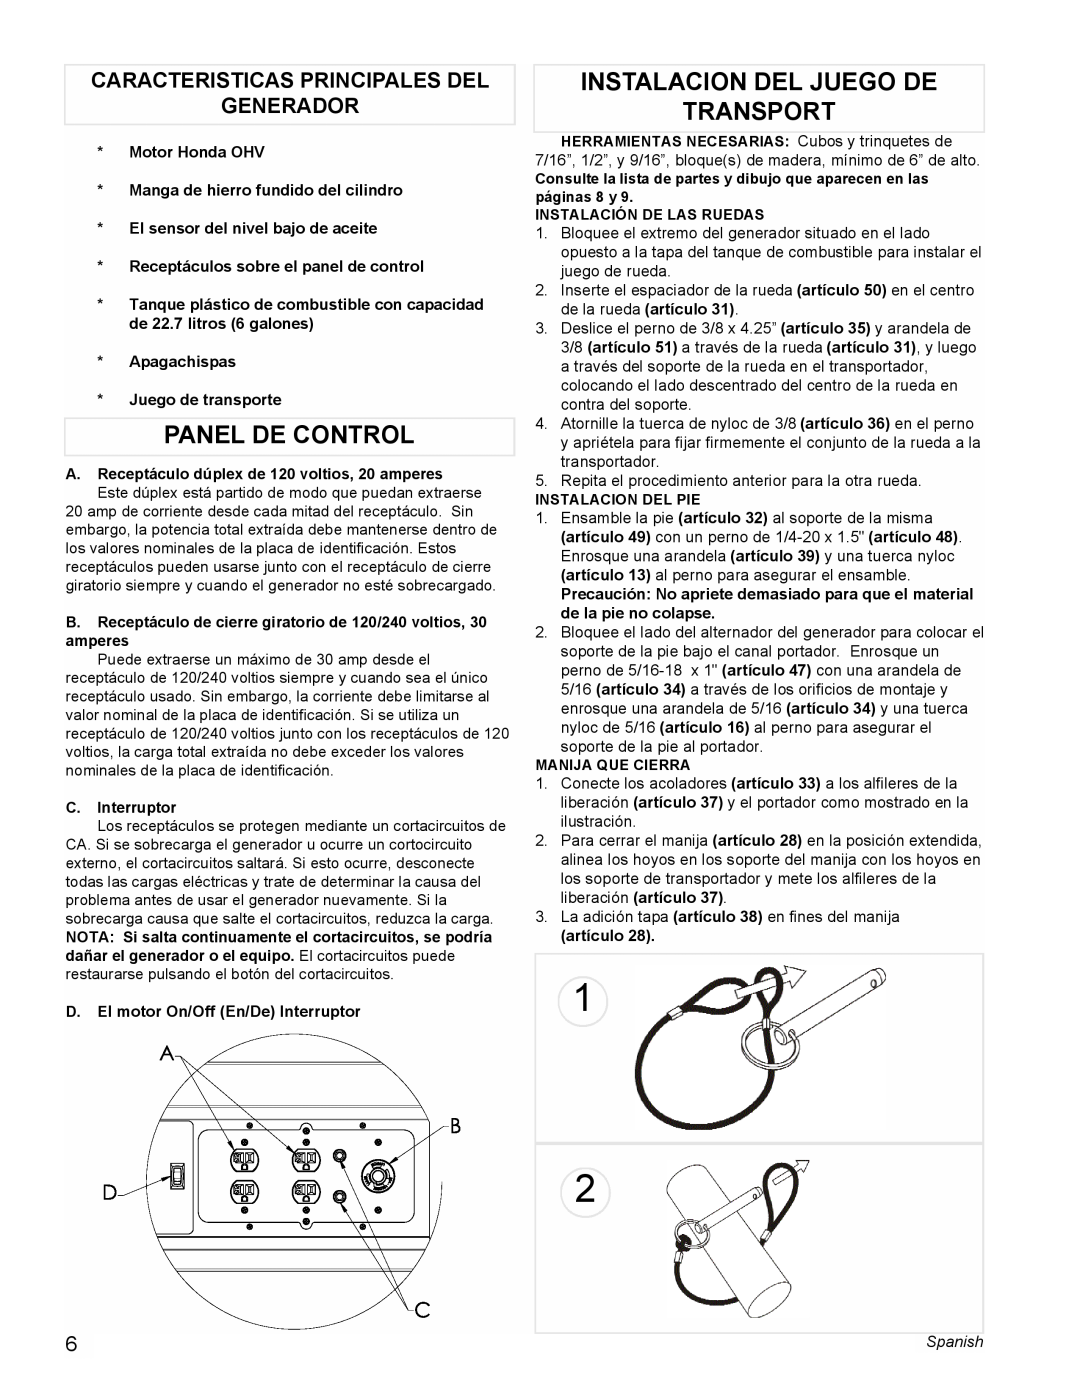 Powermate PL0495503 manual Panel De Control, Instalacion Del Juego De Transport, Caracteristicas Principales Del Generador 